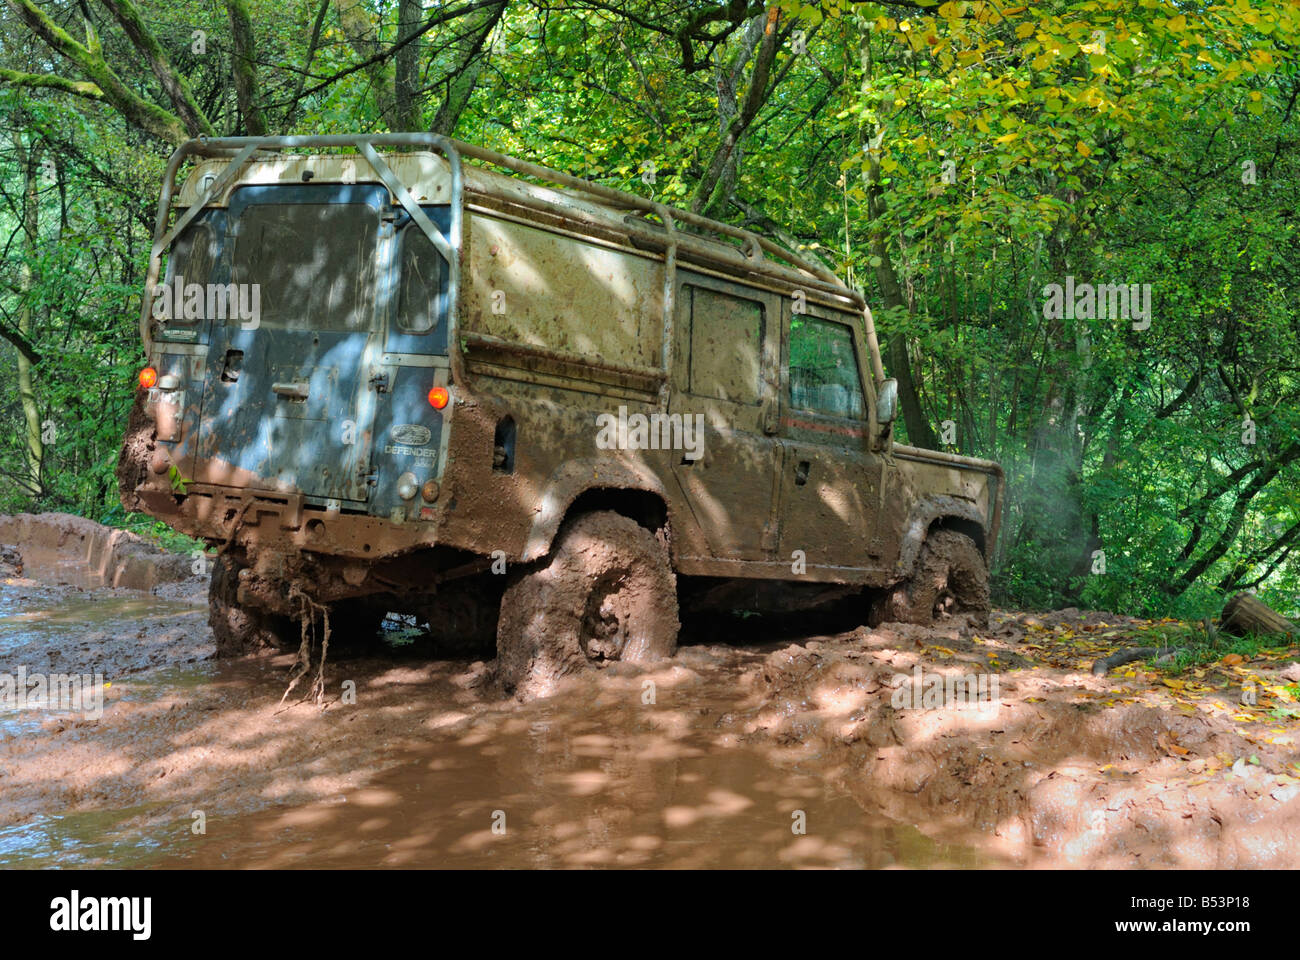 Terreni fangosi Land Rover Defender 110 passando attraverso il fango profondo su una pista forestale nel Weserbergland. Foto Stock